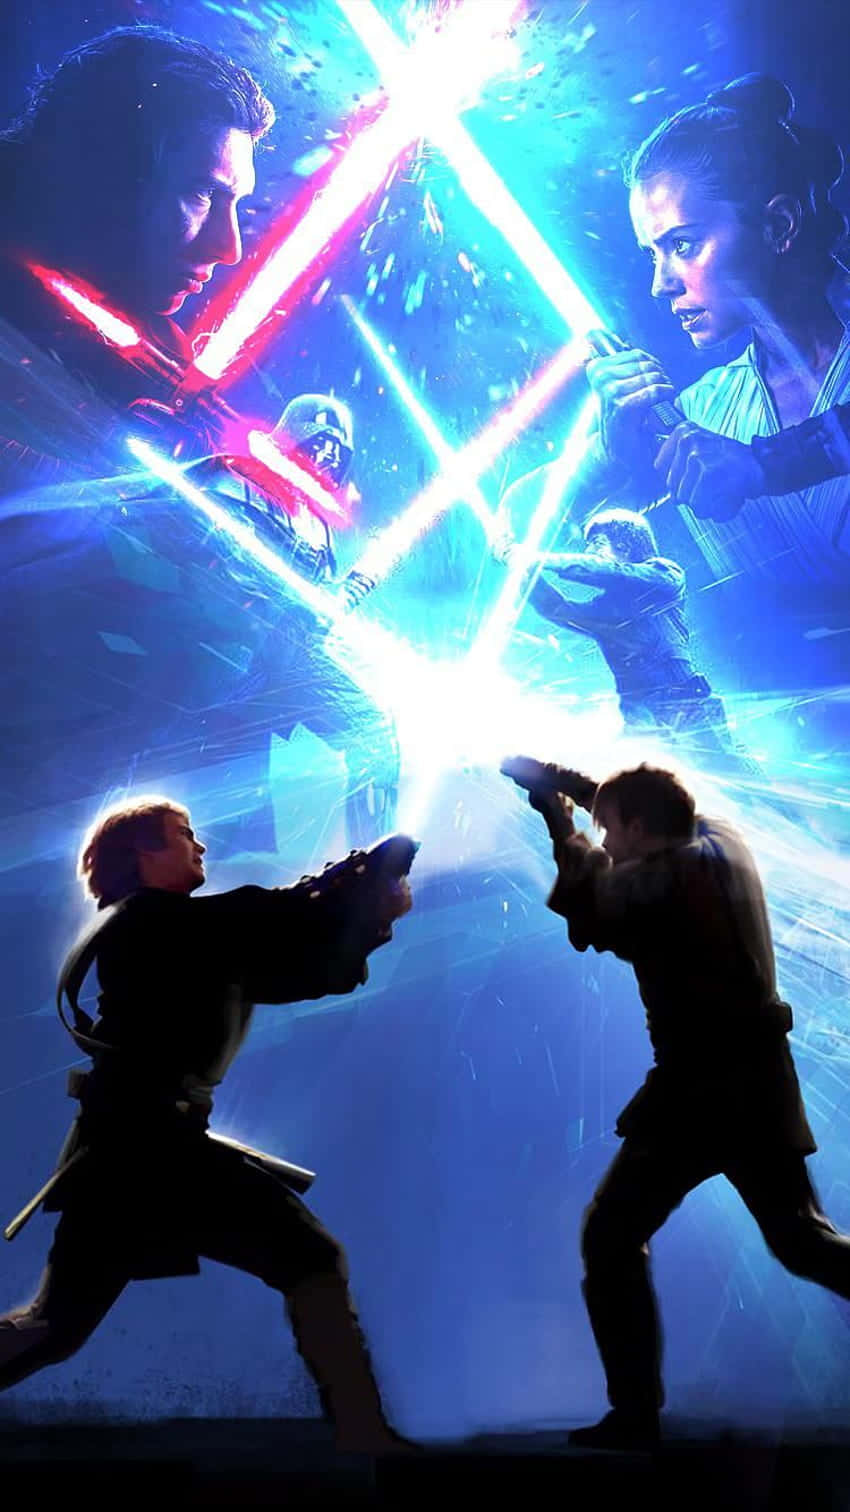 Star Wars Epic Lightsaber Duel Wallpaper